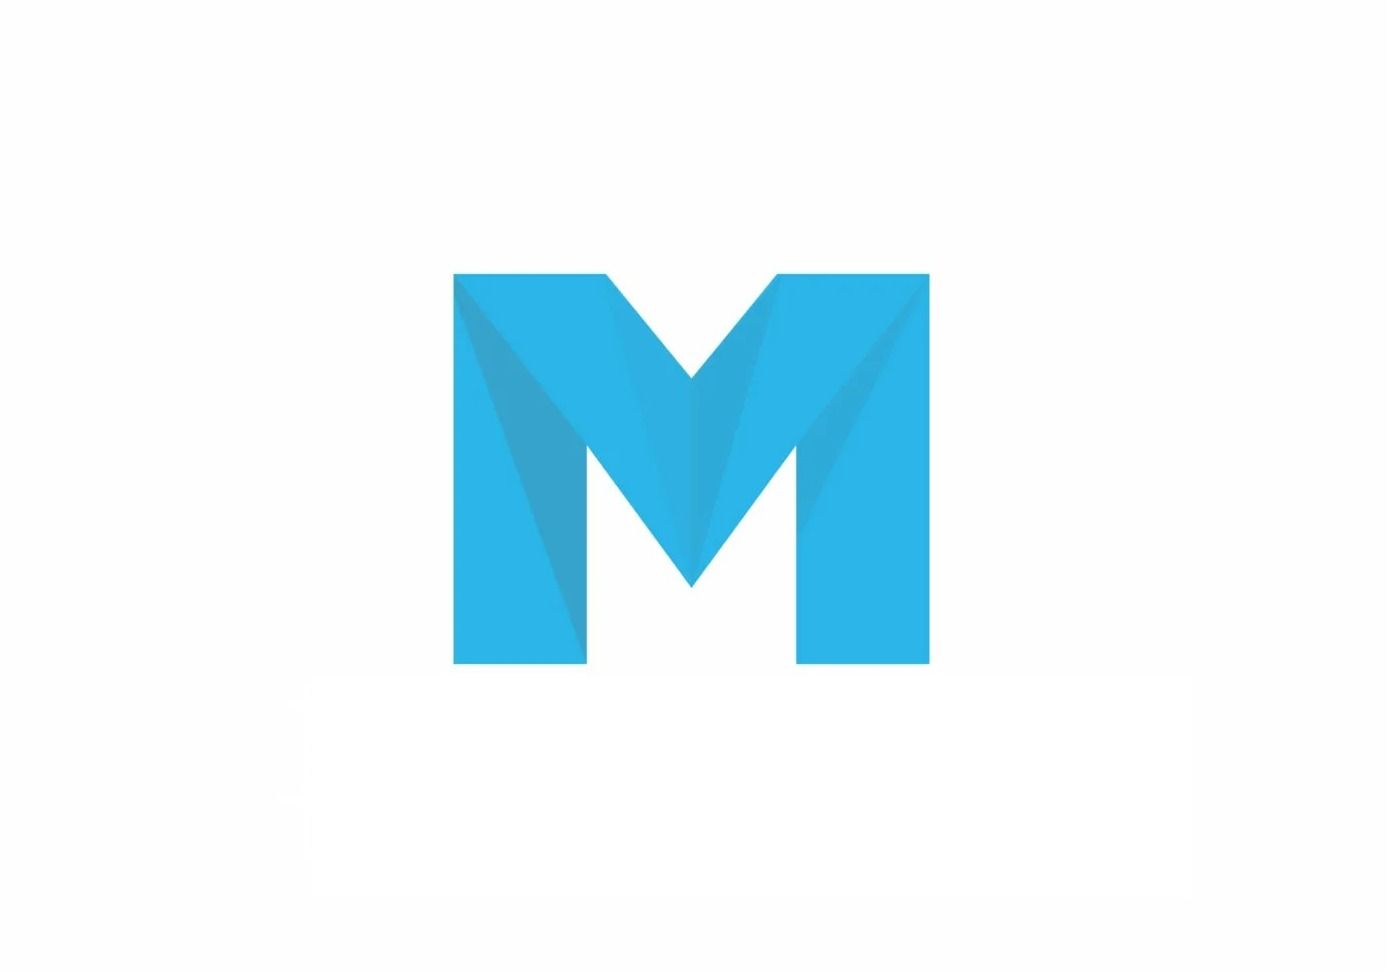 افزونه Mailster | افزونه قدرتمند و حرفه ای خبرنامه میلستر نسخه 3.1.5